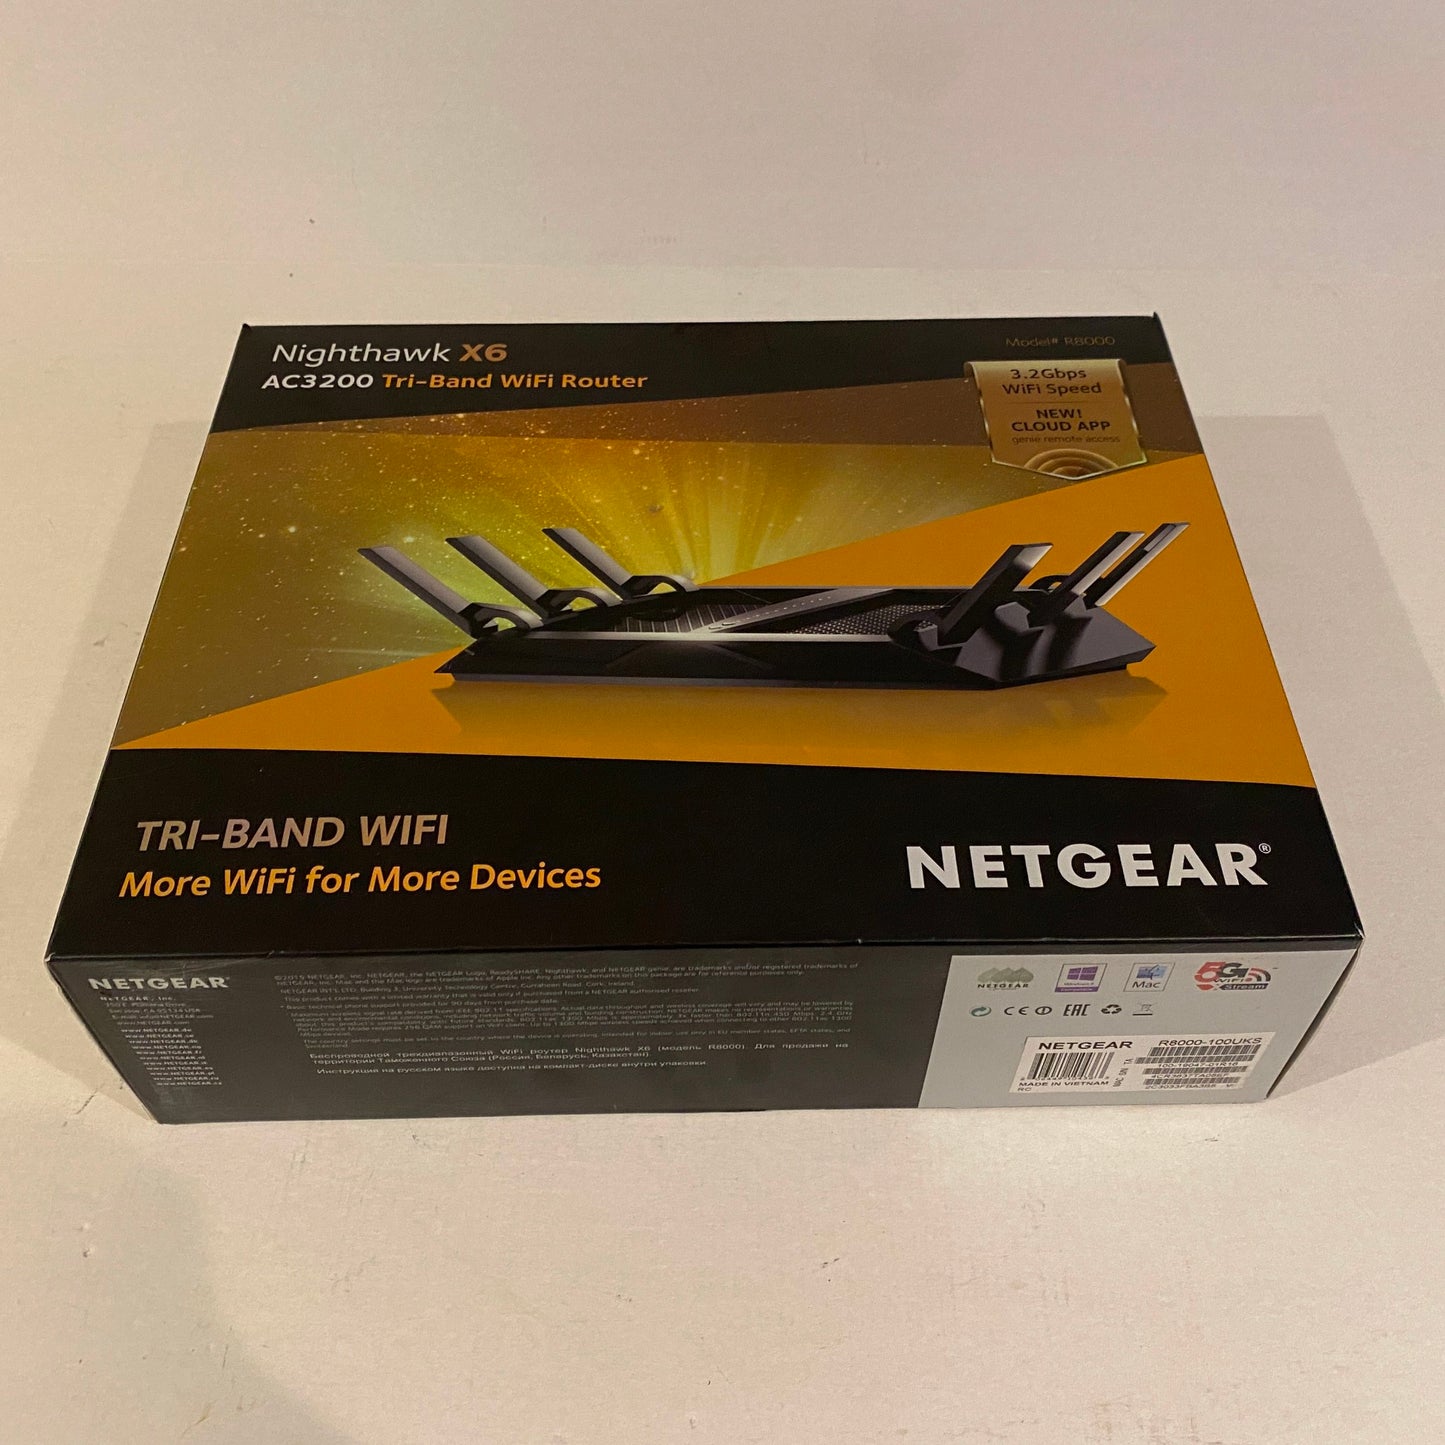 Netgear Nighthawk X6 AC3200 Tri-Band Wifi Router - R8000